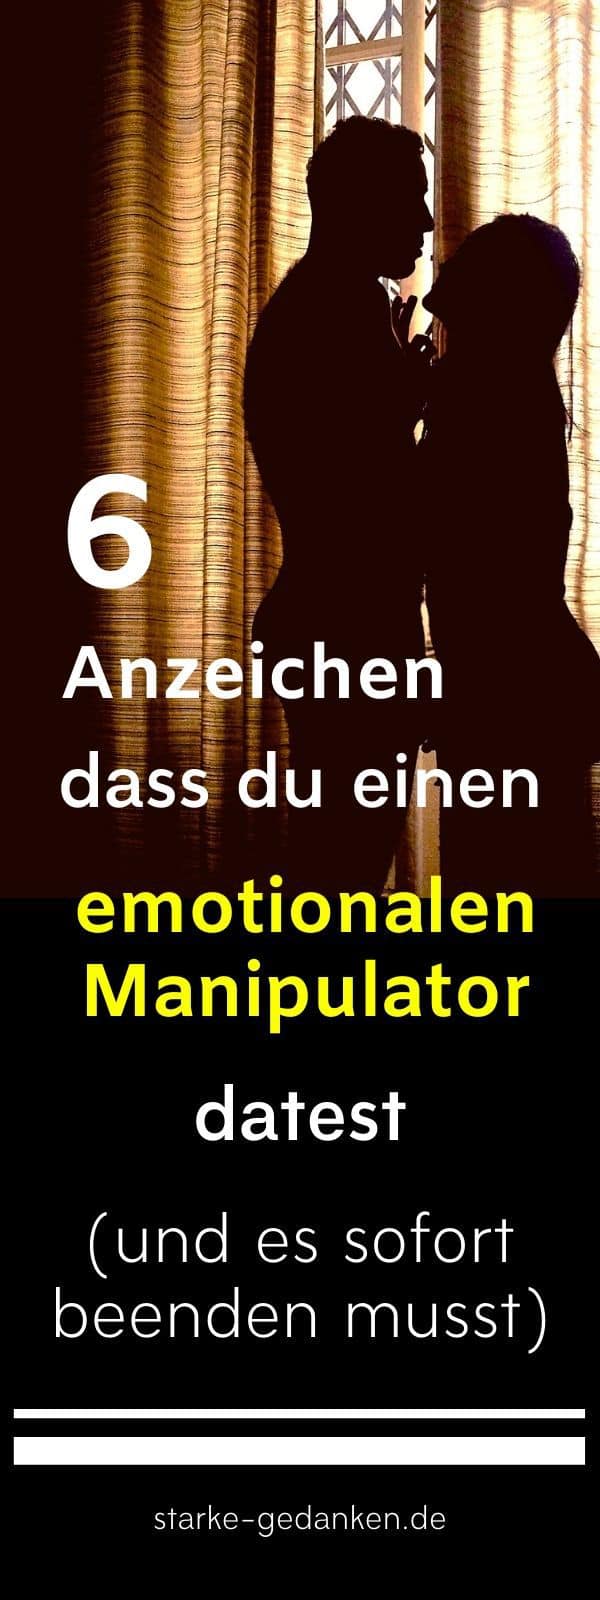 6 Anzeichen, dass du einen emotionalen Manipulator datest (und es sofort beenden musst)